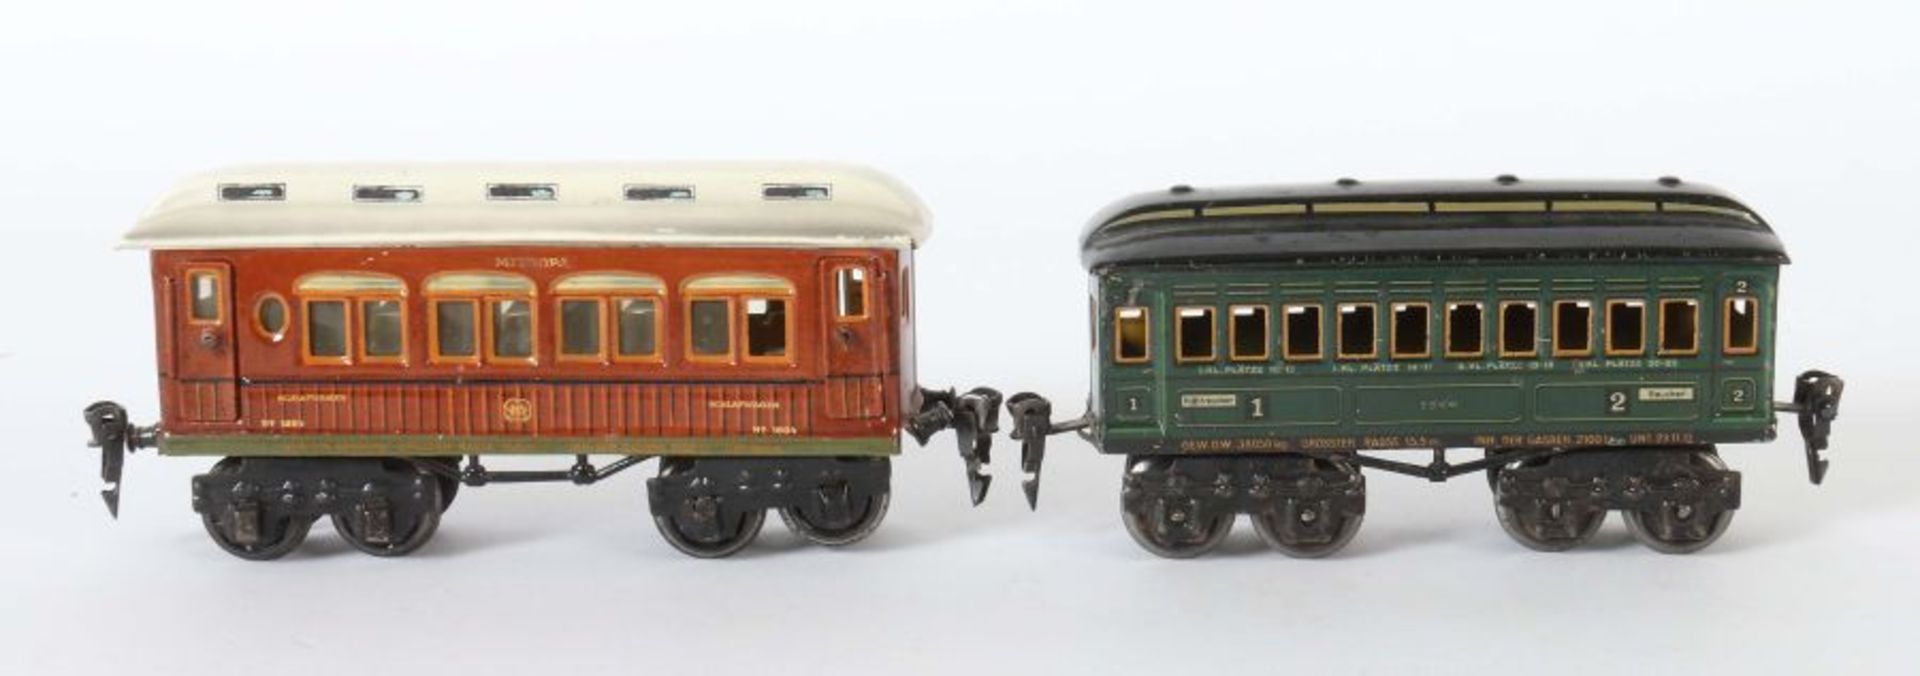 2 Personenwagen Märklin, Spur 0, 1 x Schlafwagen "MITROPA" 1894, BZ 1925, Teakholzoptik, - Bild 2 aus 2